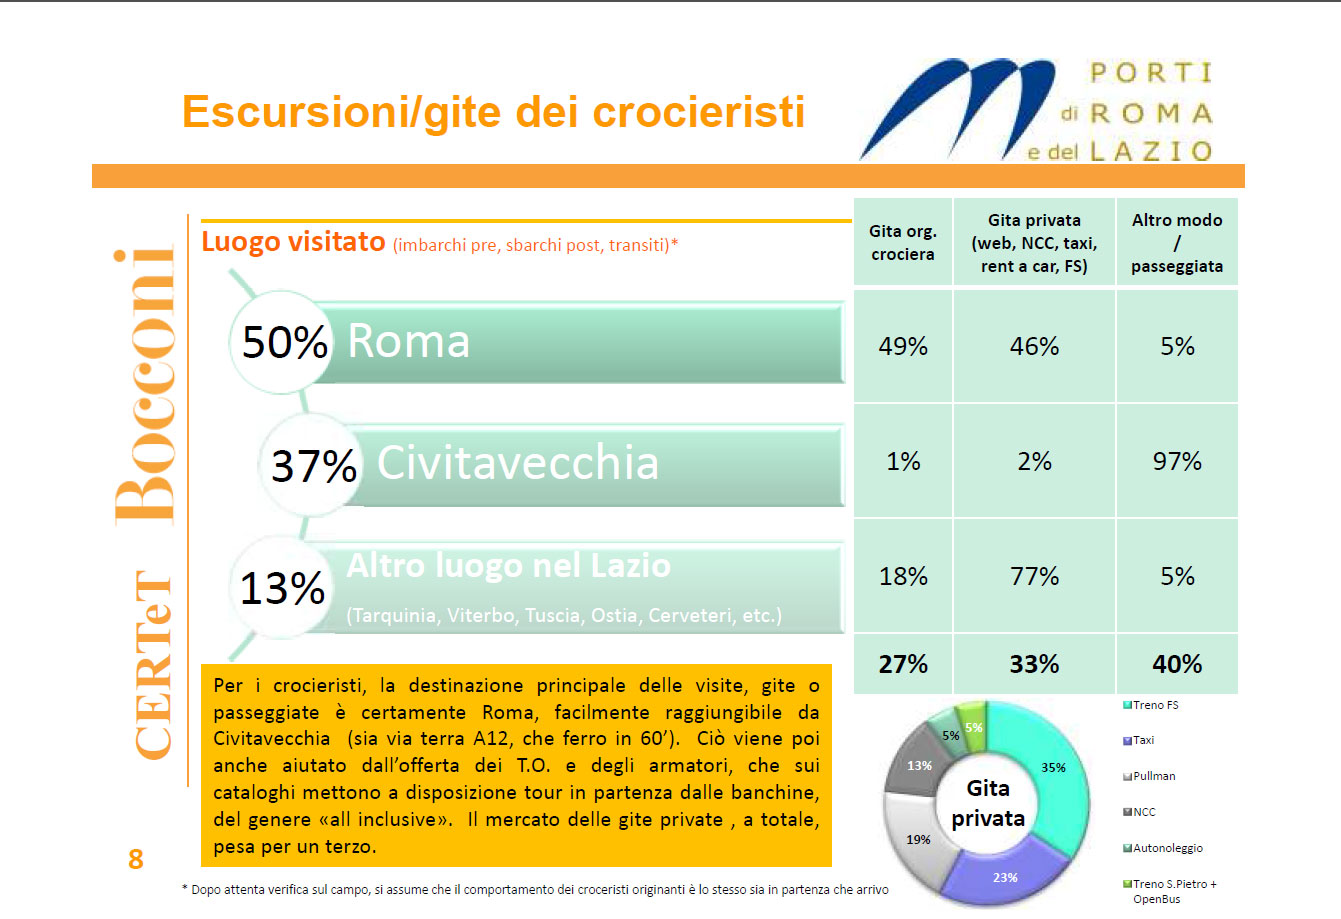 Degli oltre 2 milioni di crocieristi il 50% si dirige a Roma, il 37% rimane a Civitavecchia e il 13% sceglie altre destinazioni limitrofe